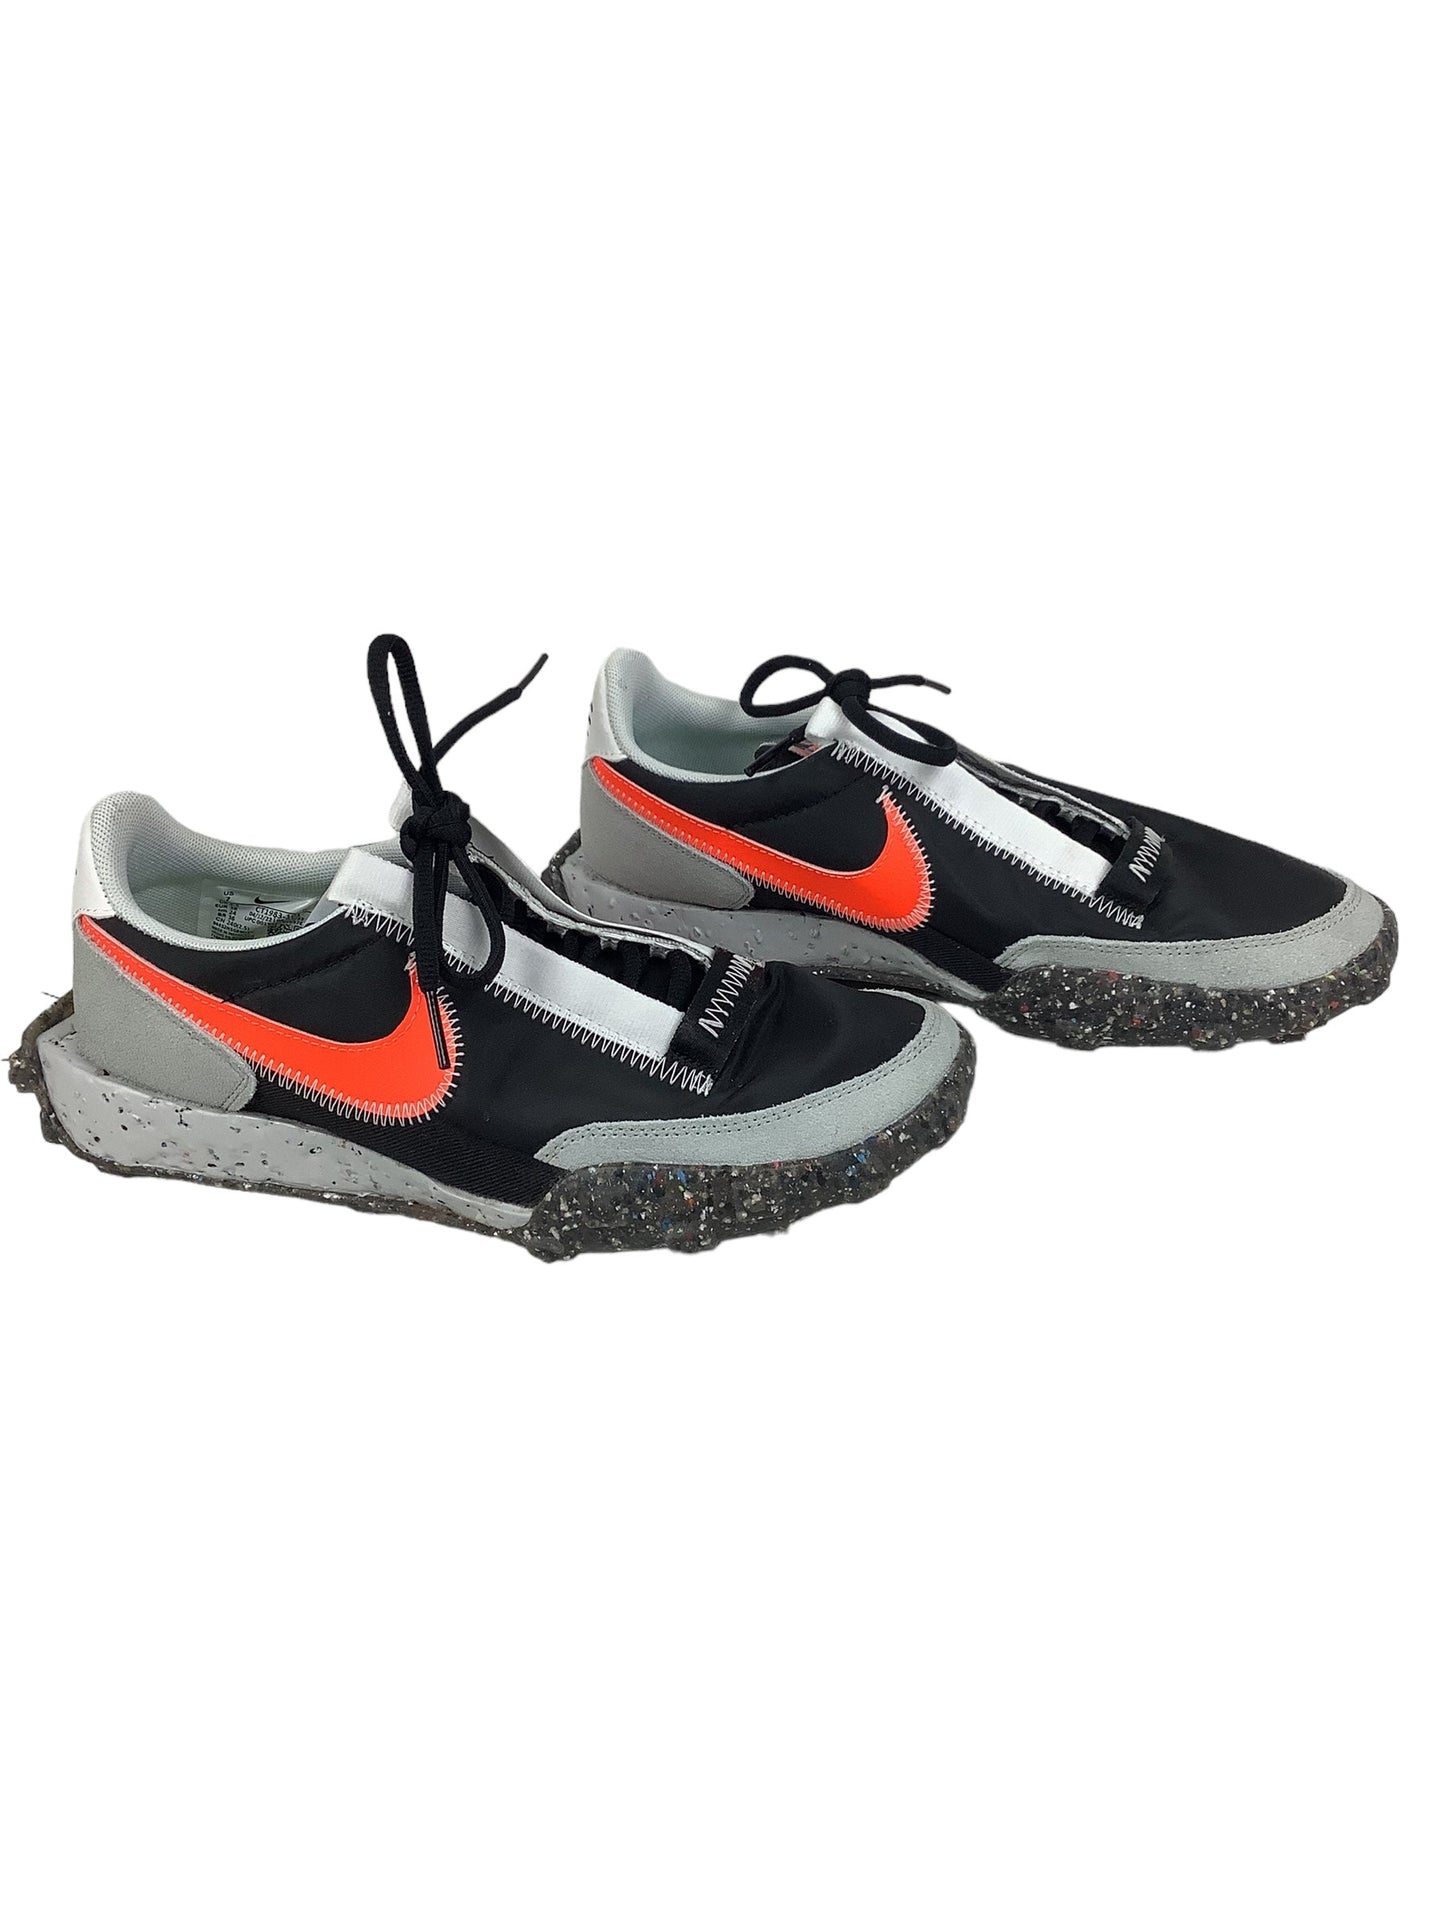 Black & Orange Shoes Athletic Nike, Size 7